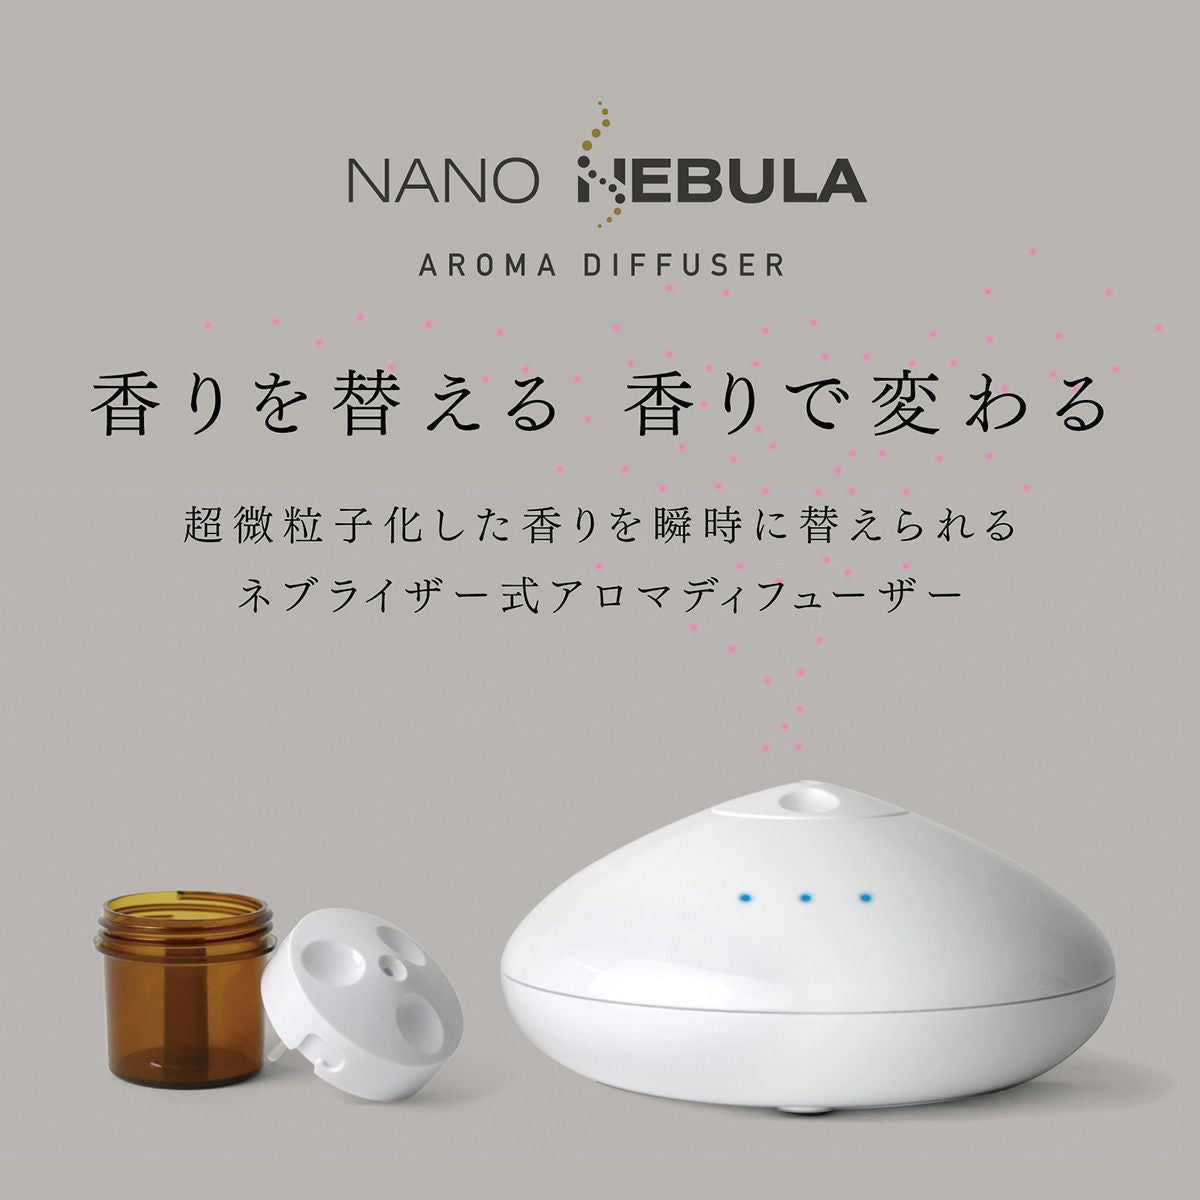 Nano Nebula – sparoom®